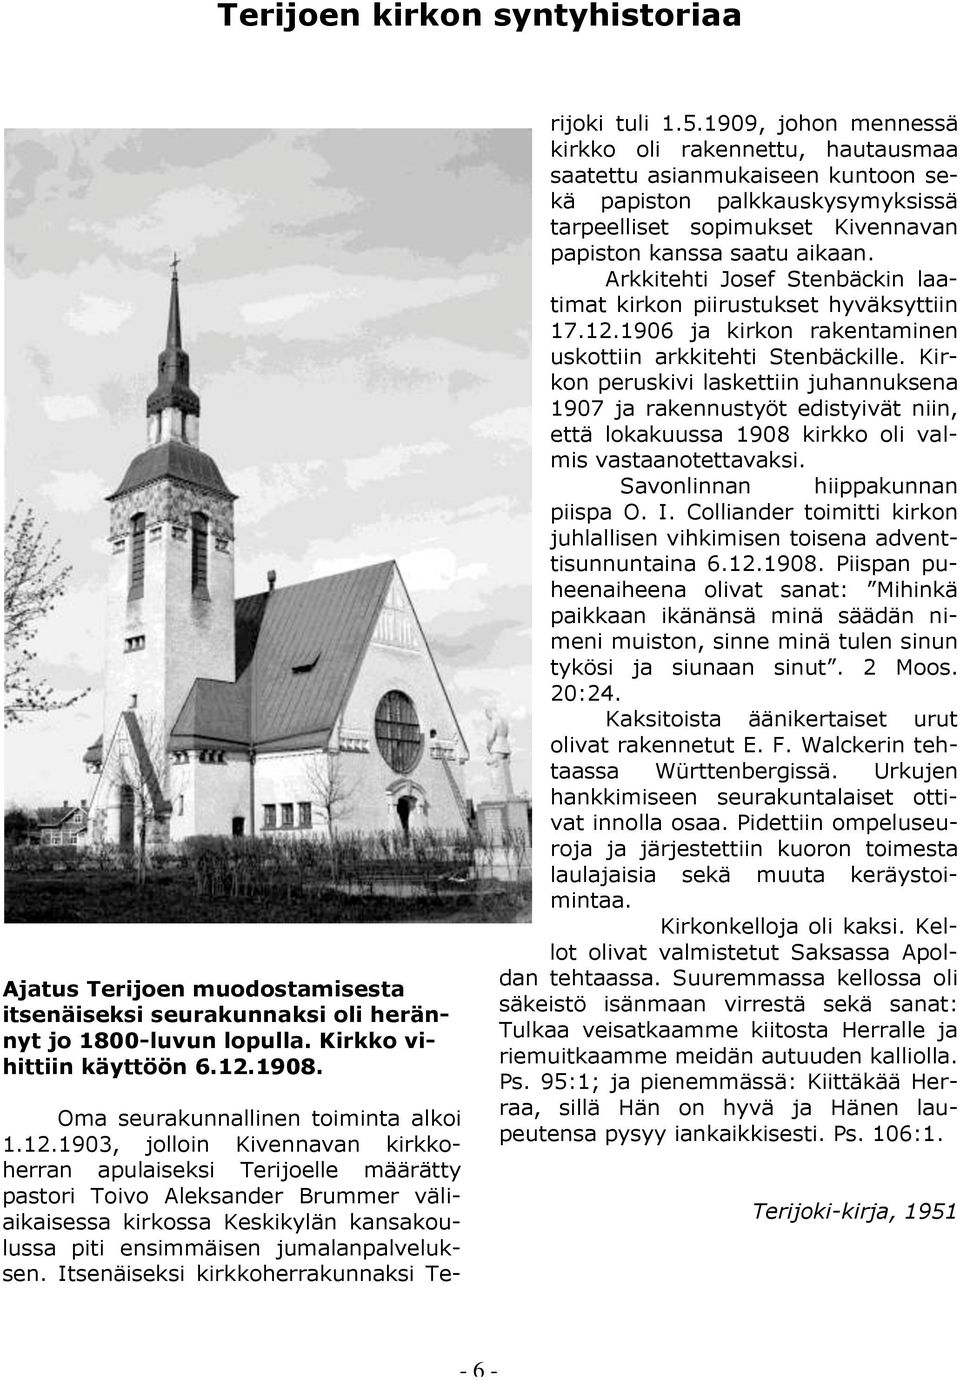 1903, jolloin Kivennavan kirkkoherran apulaiseksi Terijoelle määrätty pastori Toivo Aleksander Brummer väliaikaisessa kirkossa Keskikylän kansakoulussa piti ensimmäisen jumalanpalveluksen.